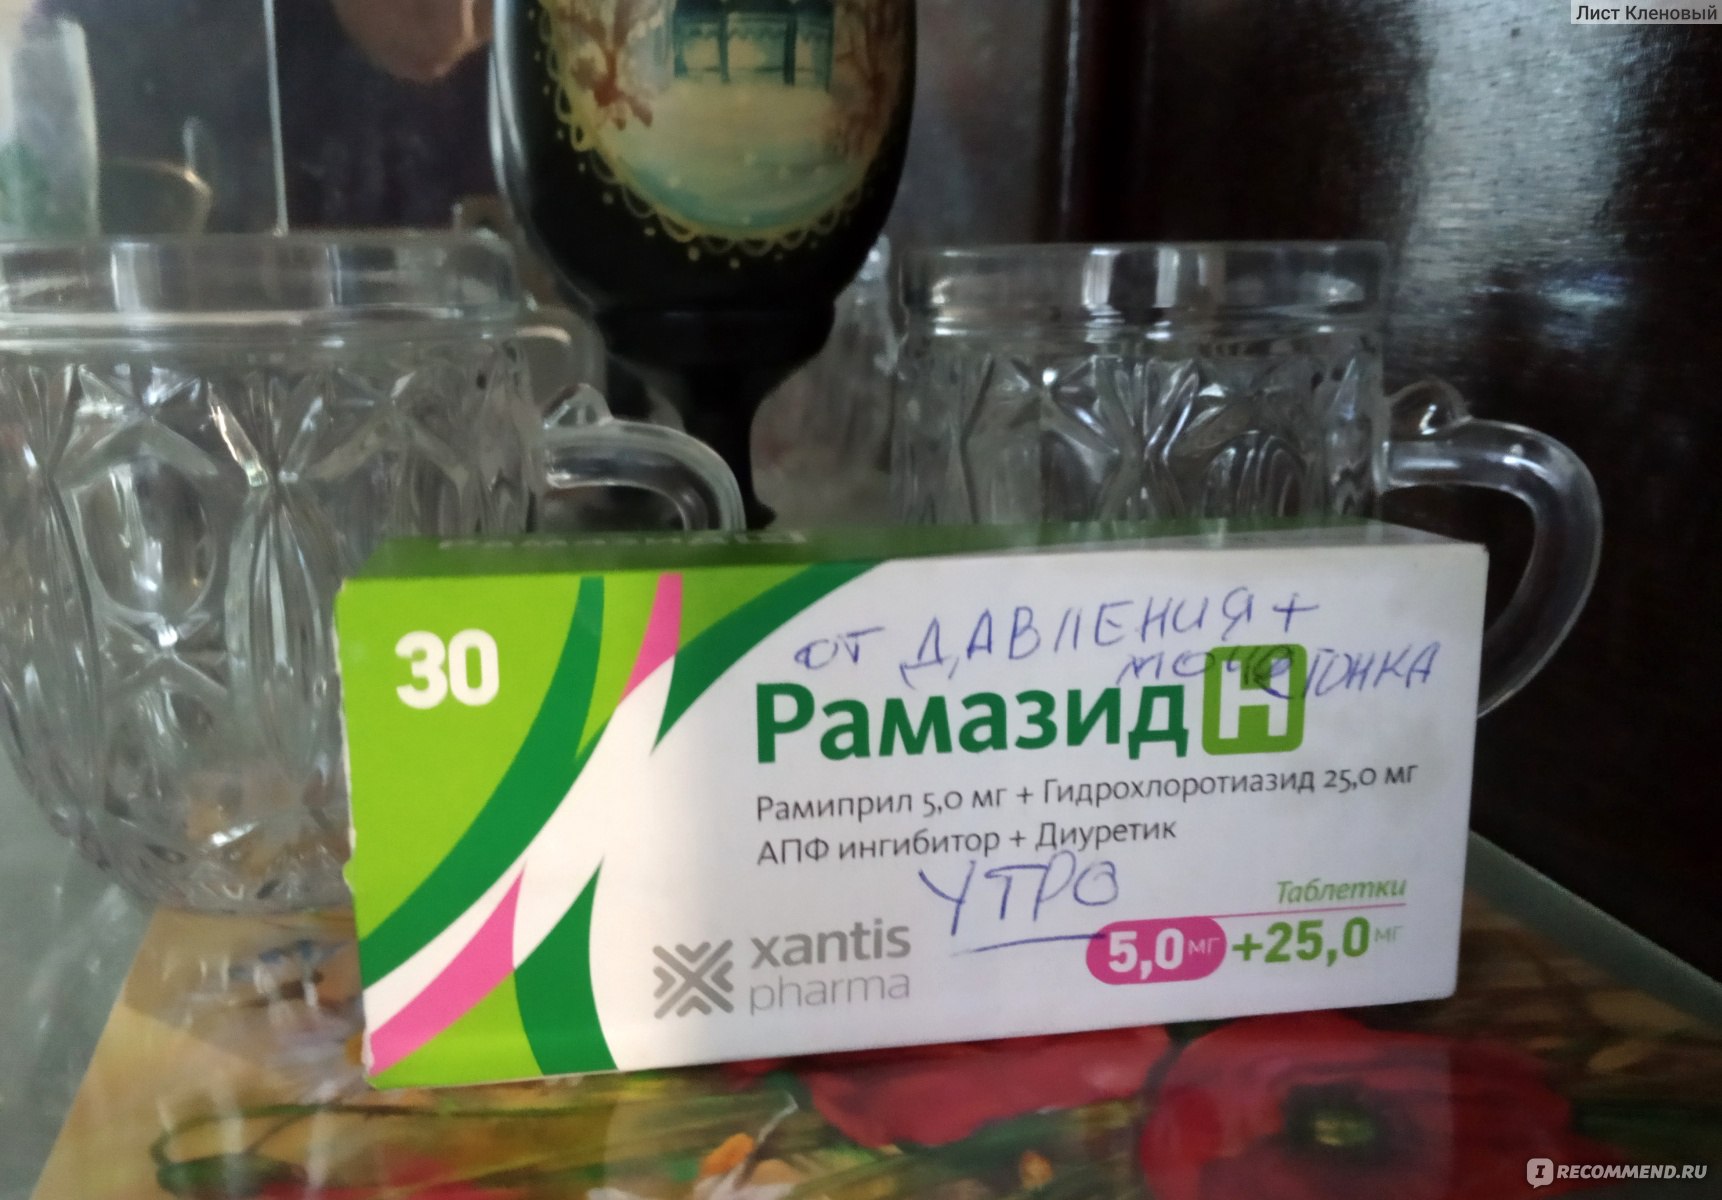 Таблетки Xantis Pharma 